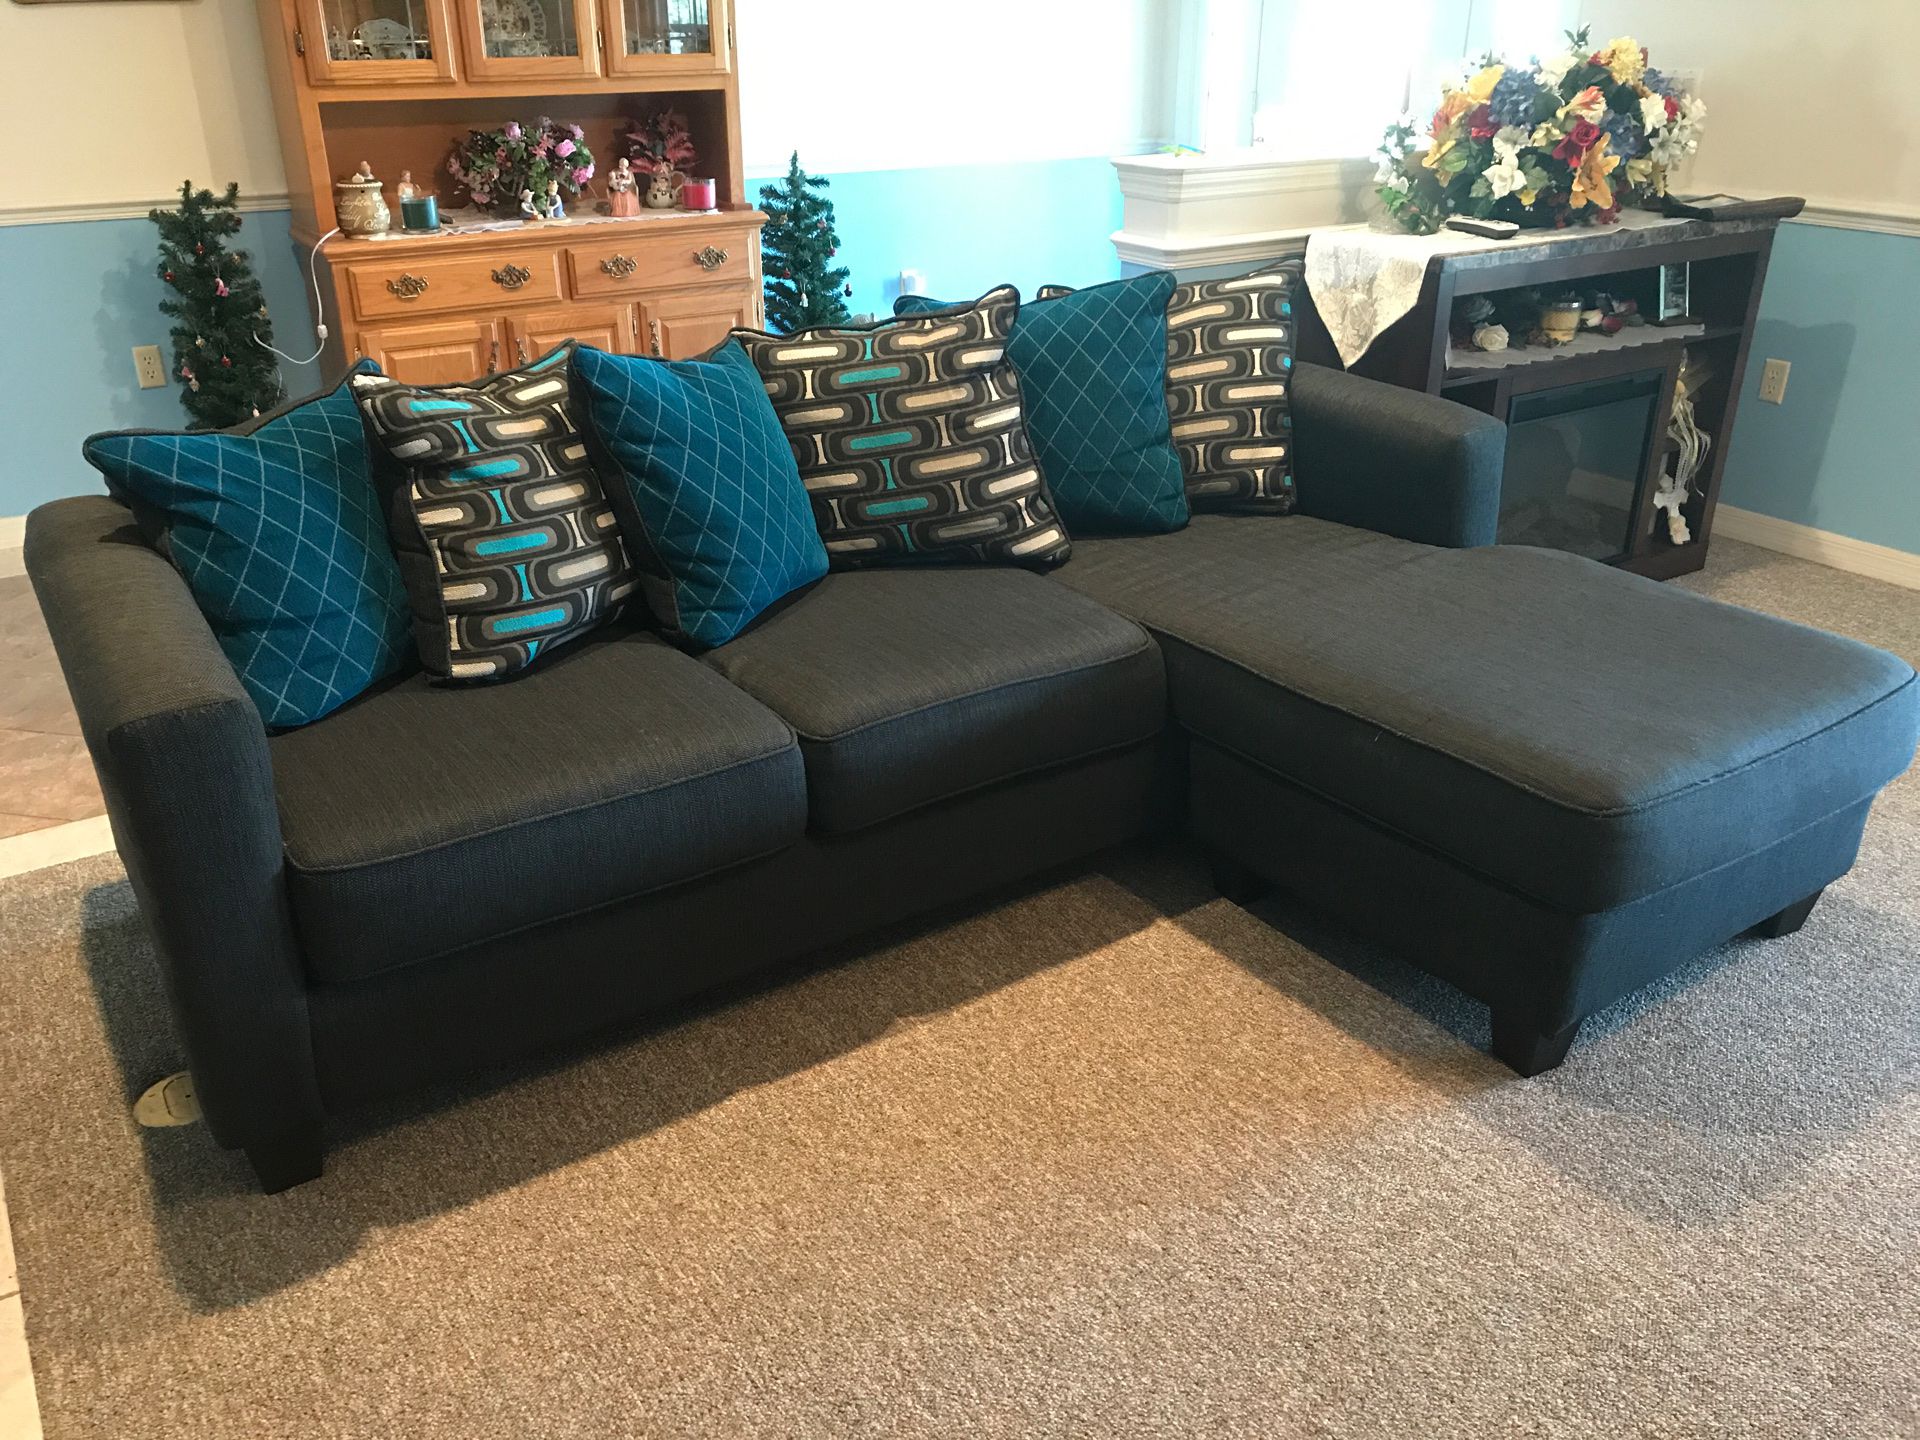 Sofa with ottoman